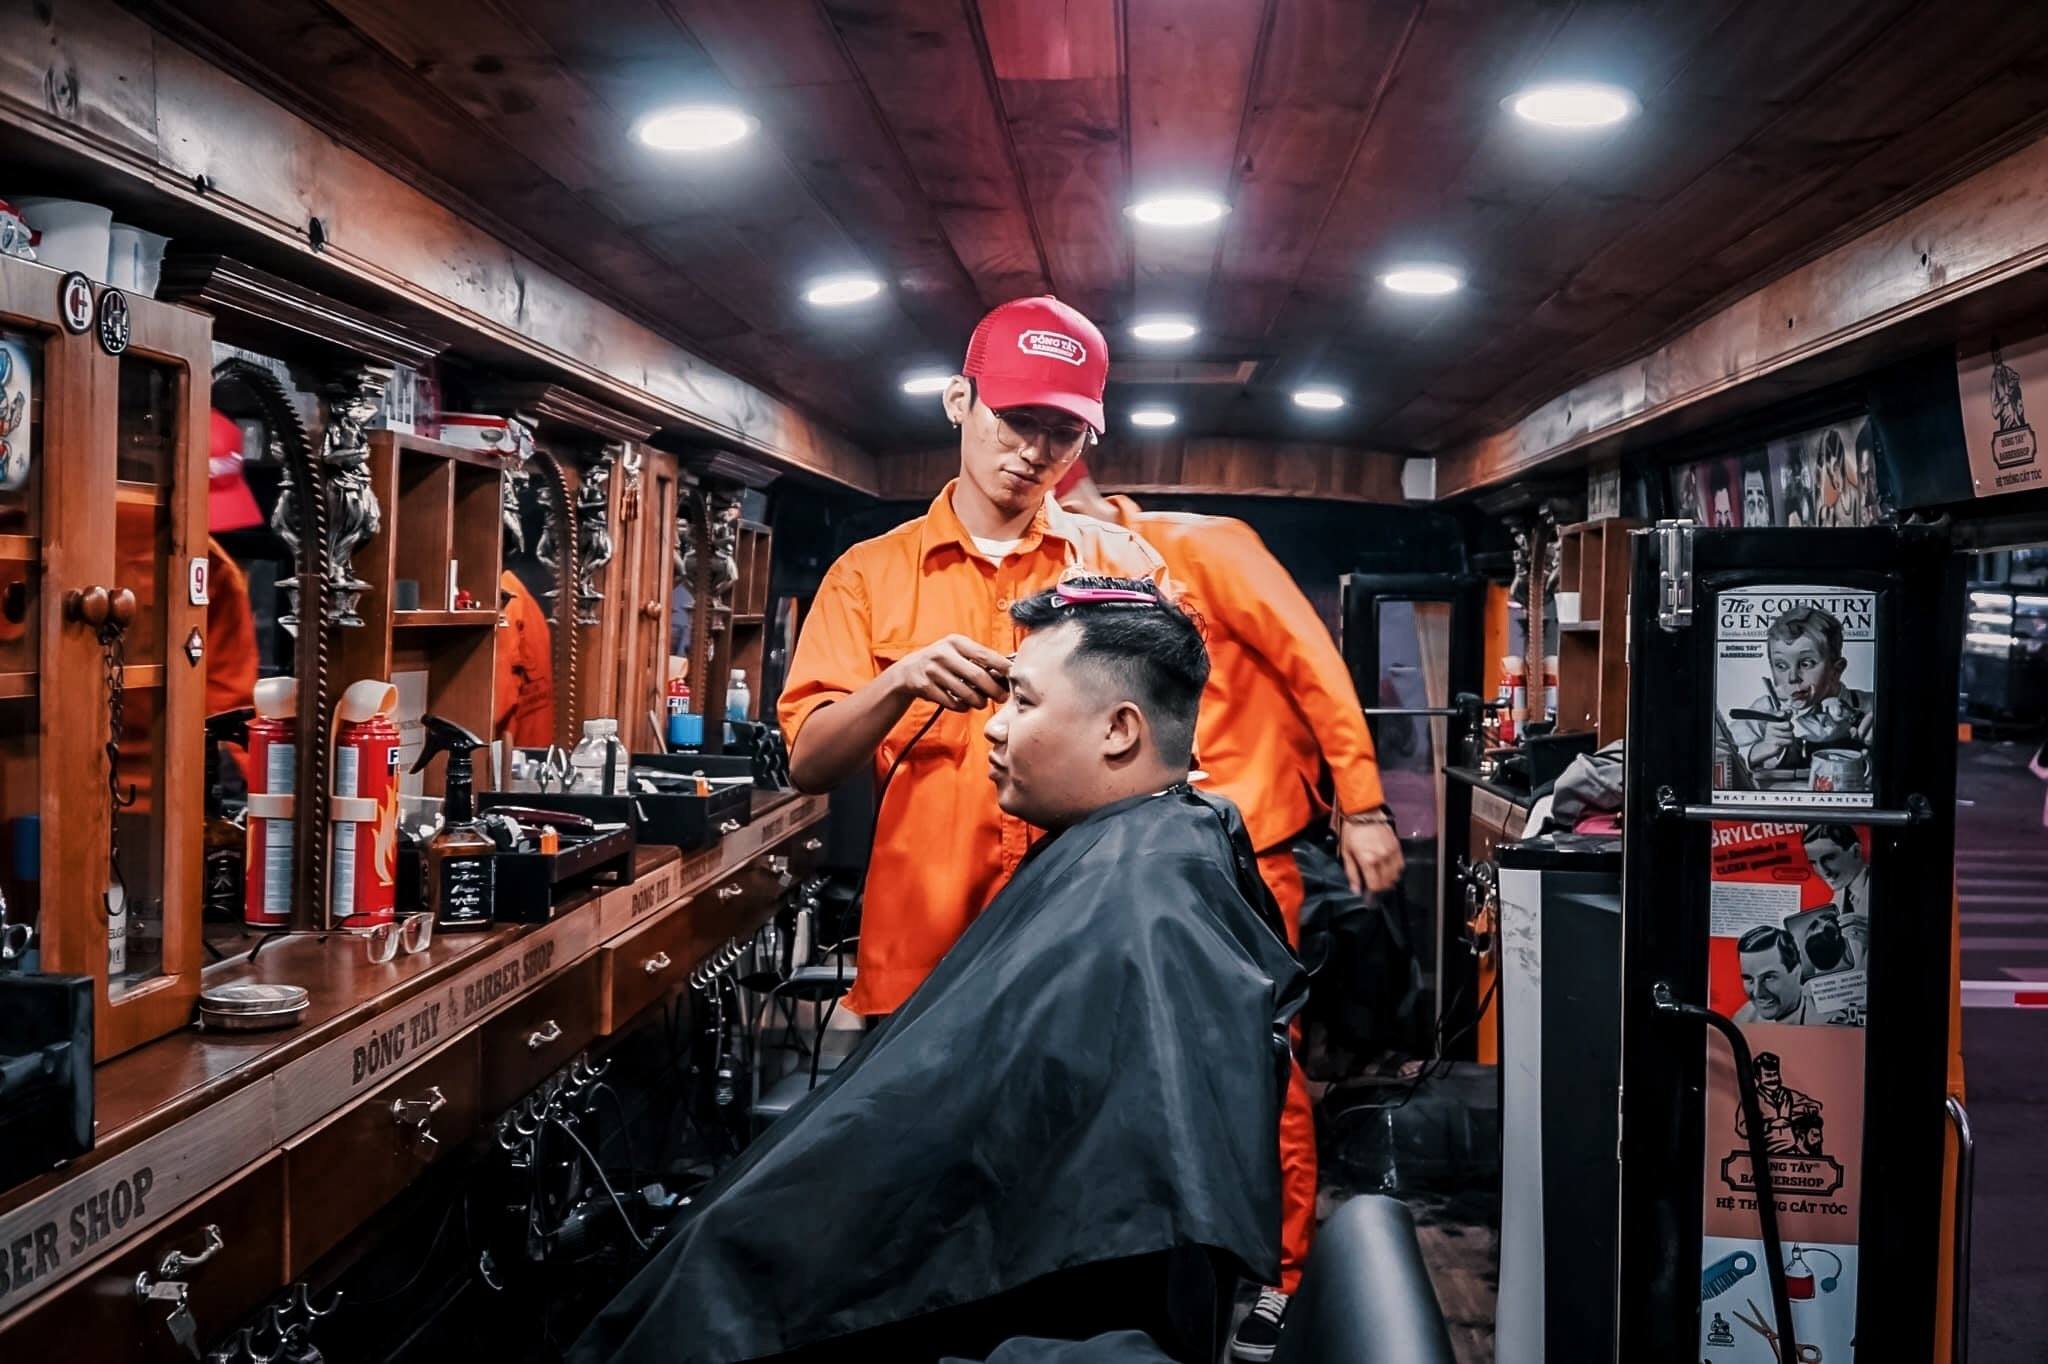 Thử tay nghề cắt tóc nam chất lượng cao tại TPHCM. Được thiết kế đặc biệt dành cho phái mạnh, kiểu tóc này mang đến một vẻ ngoài lịch lãm và đầy sự tinh tế. Với đội ngũ thợ lành nghề, bạn sẽ được tư vấn về cách chăm sóc tóc và các phong cách tóc khác nhau. Hãy đến và cảm nhận sự khác biệt.